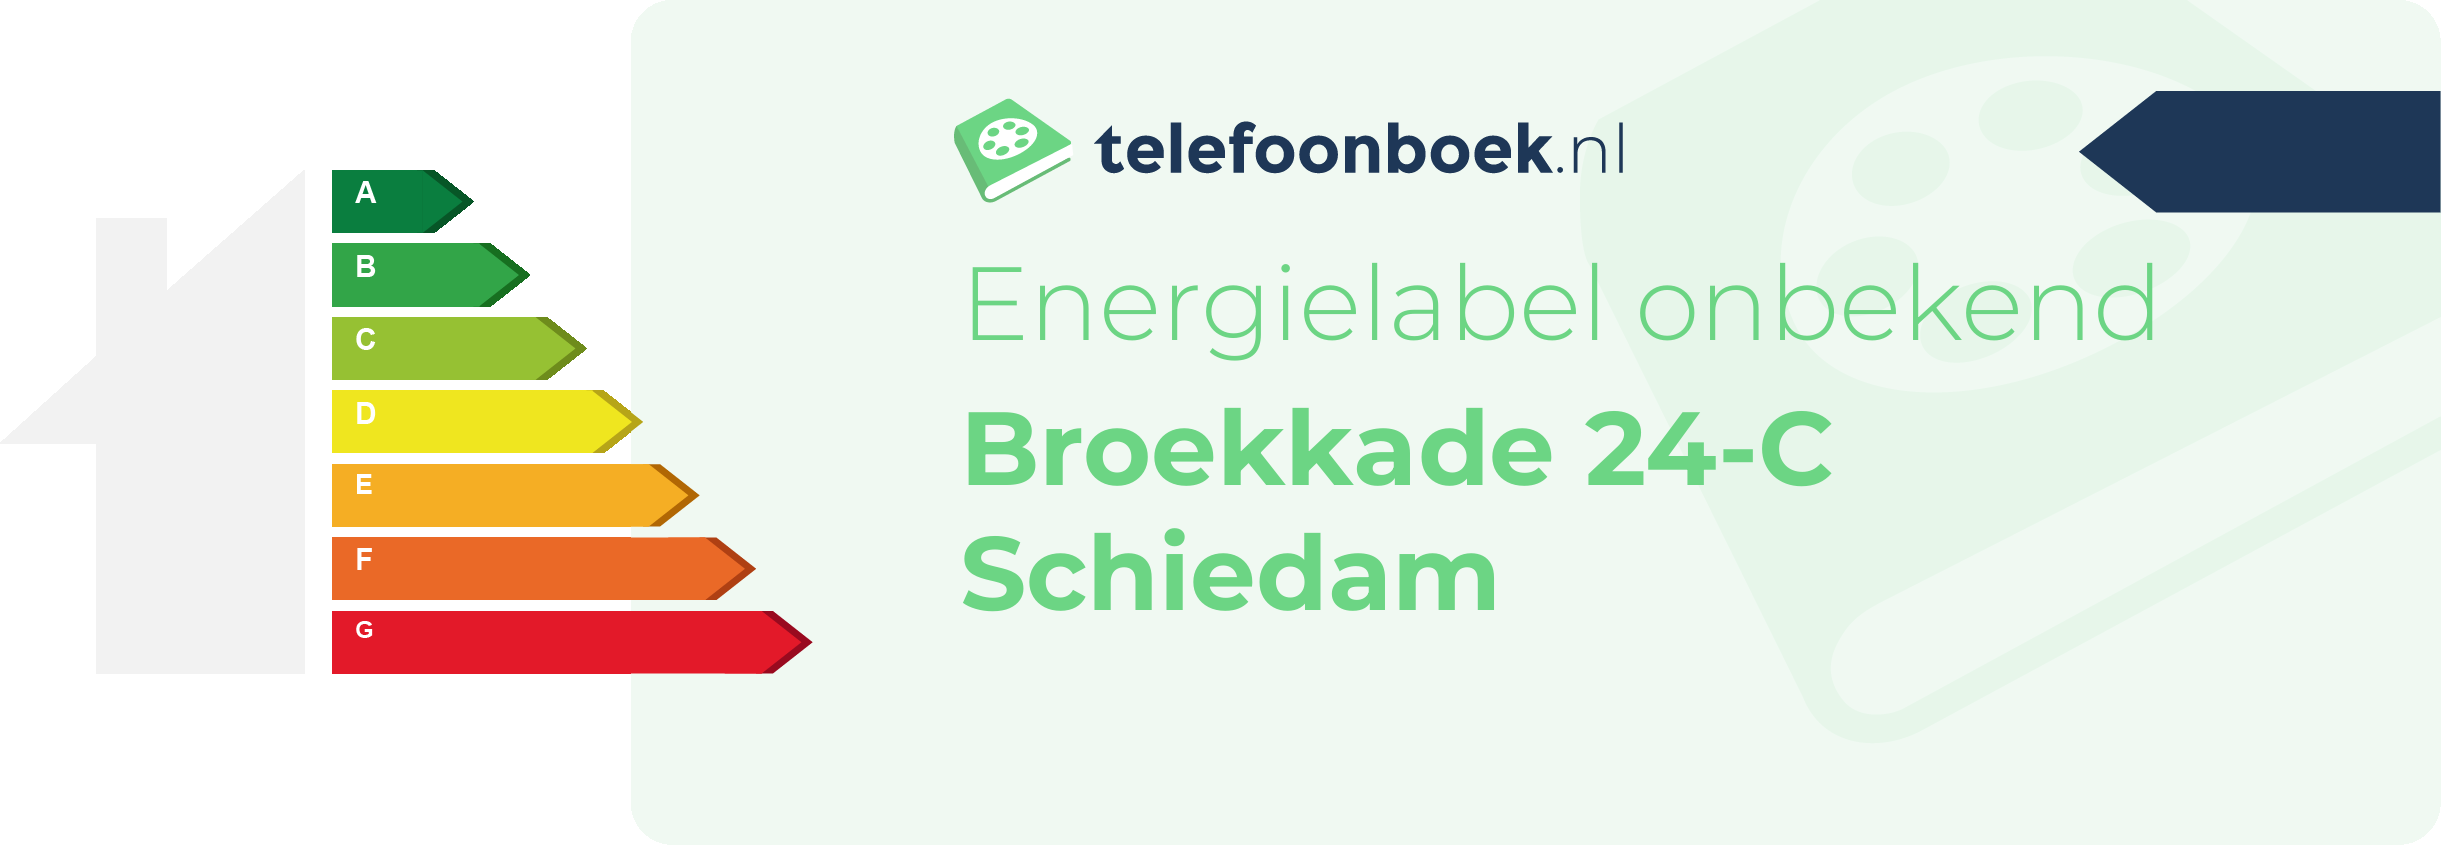 Energielabel Broekkade 24-C Schiedam